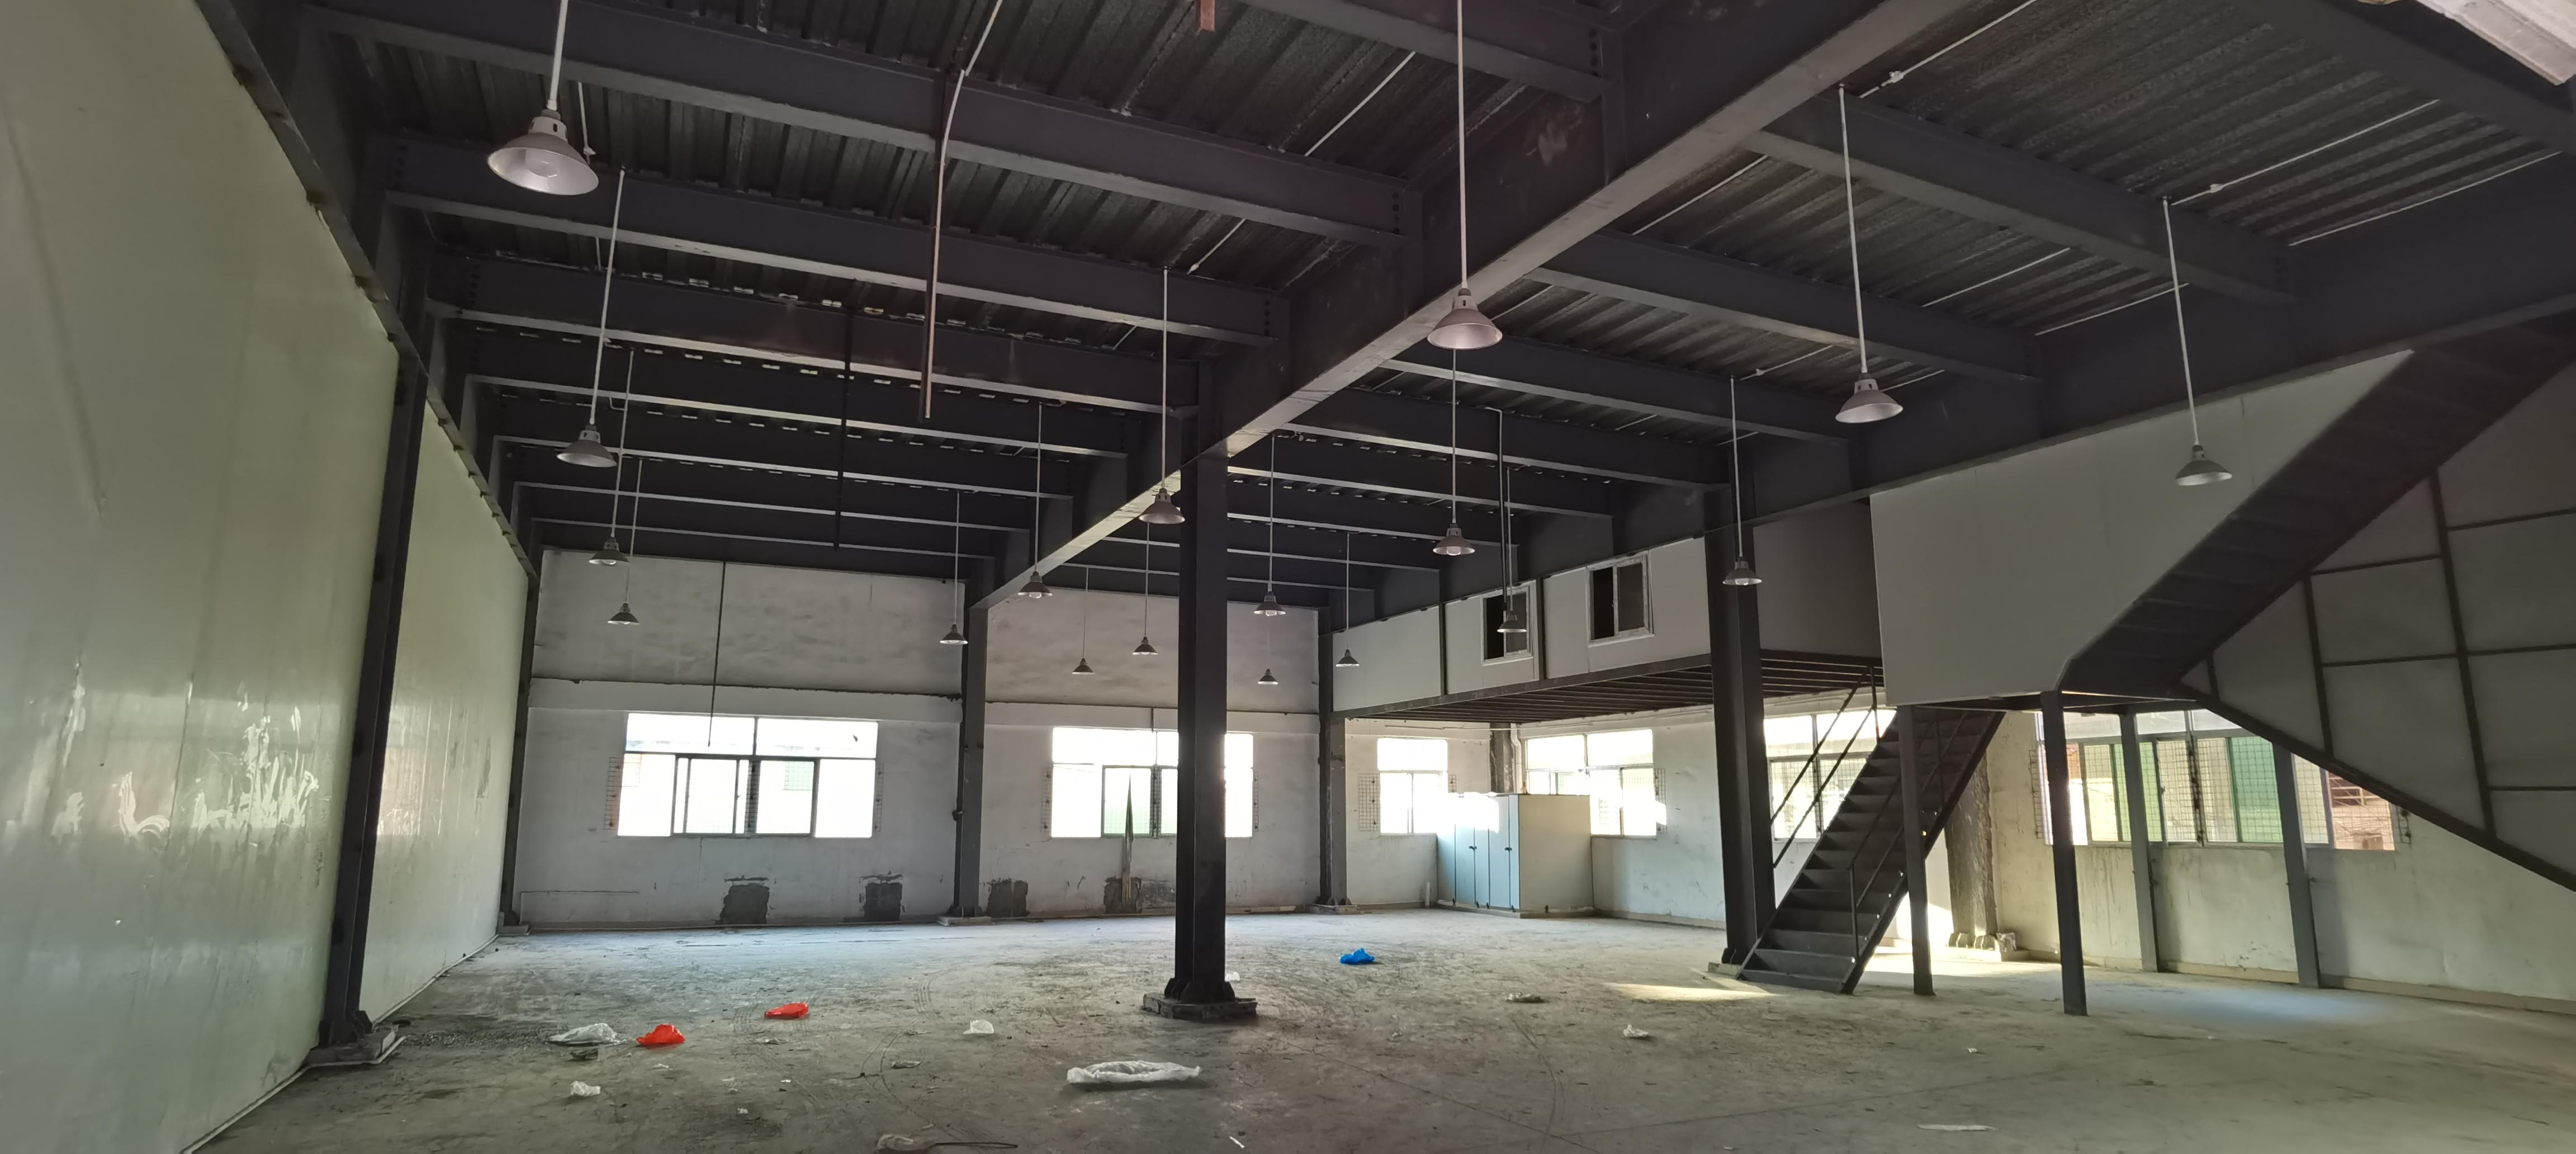 虎门镇黄村新出钢构一楼厂房，非常适合做仓库五金加工等行业。